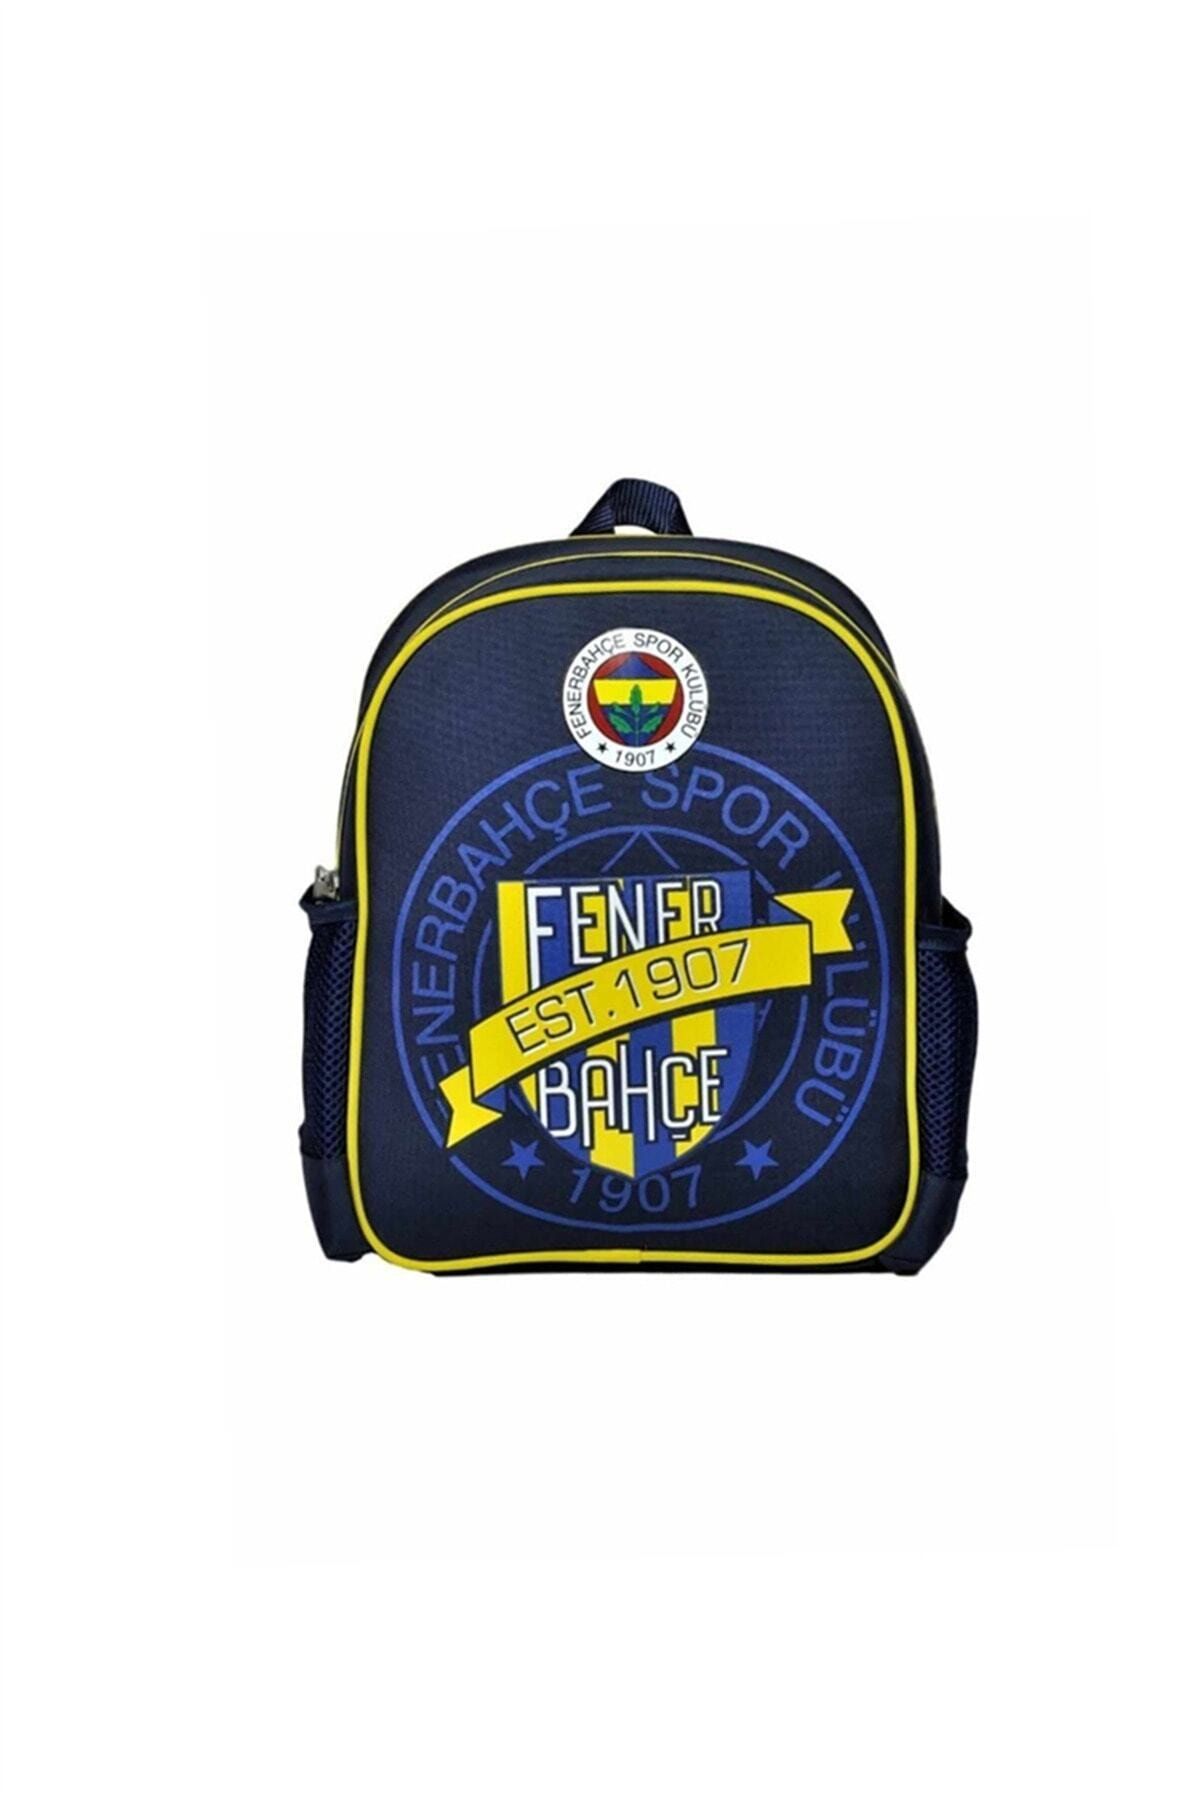 Fenerbahçe Fenerbahçe Lisanslı Anaokulu Çantası 96172